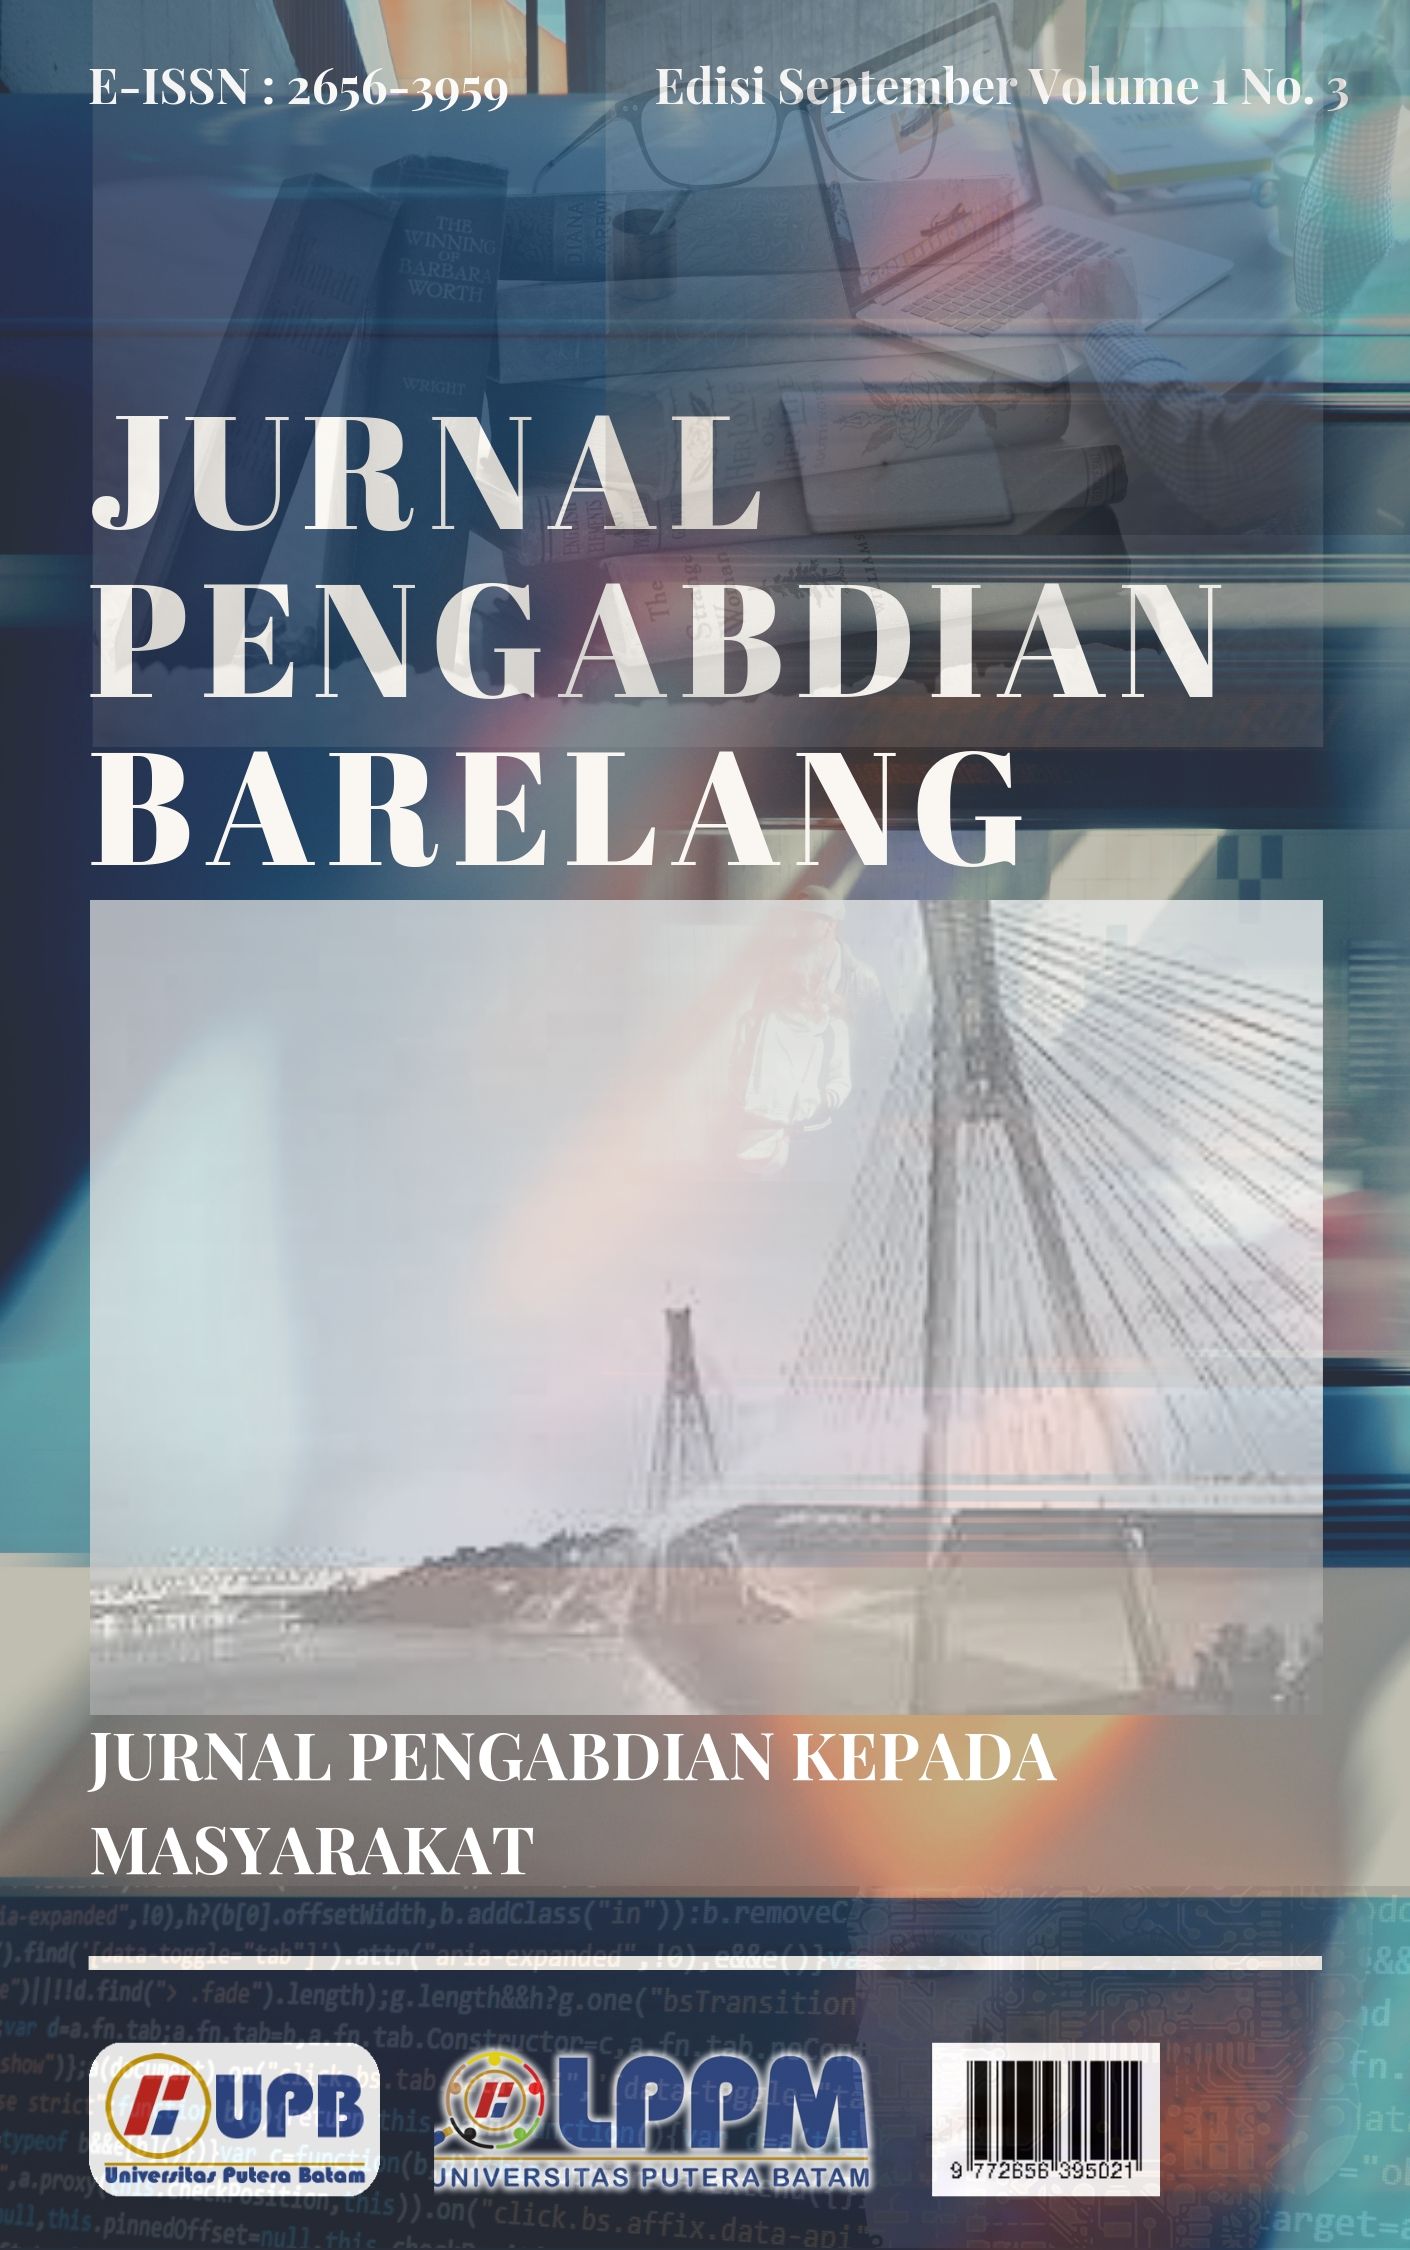 					View Vol. 1 No. 3 (2019): Jurnal Pengabdian Barelang
				